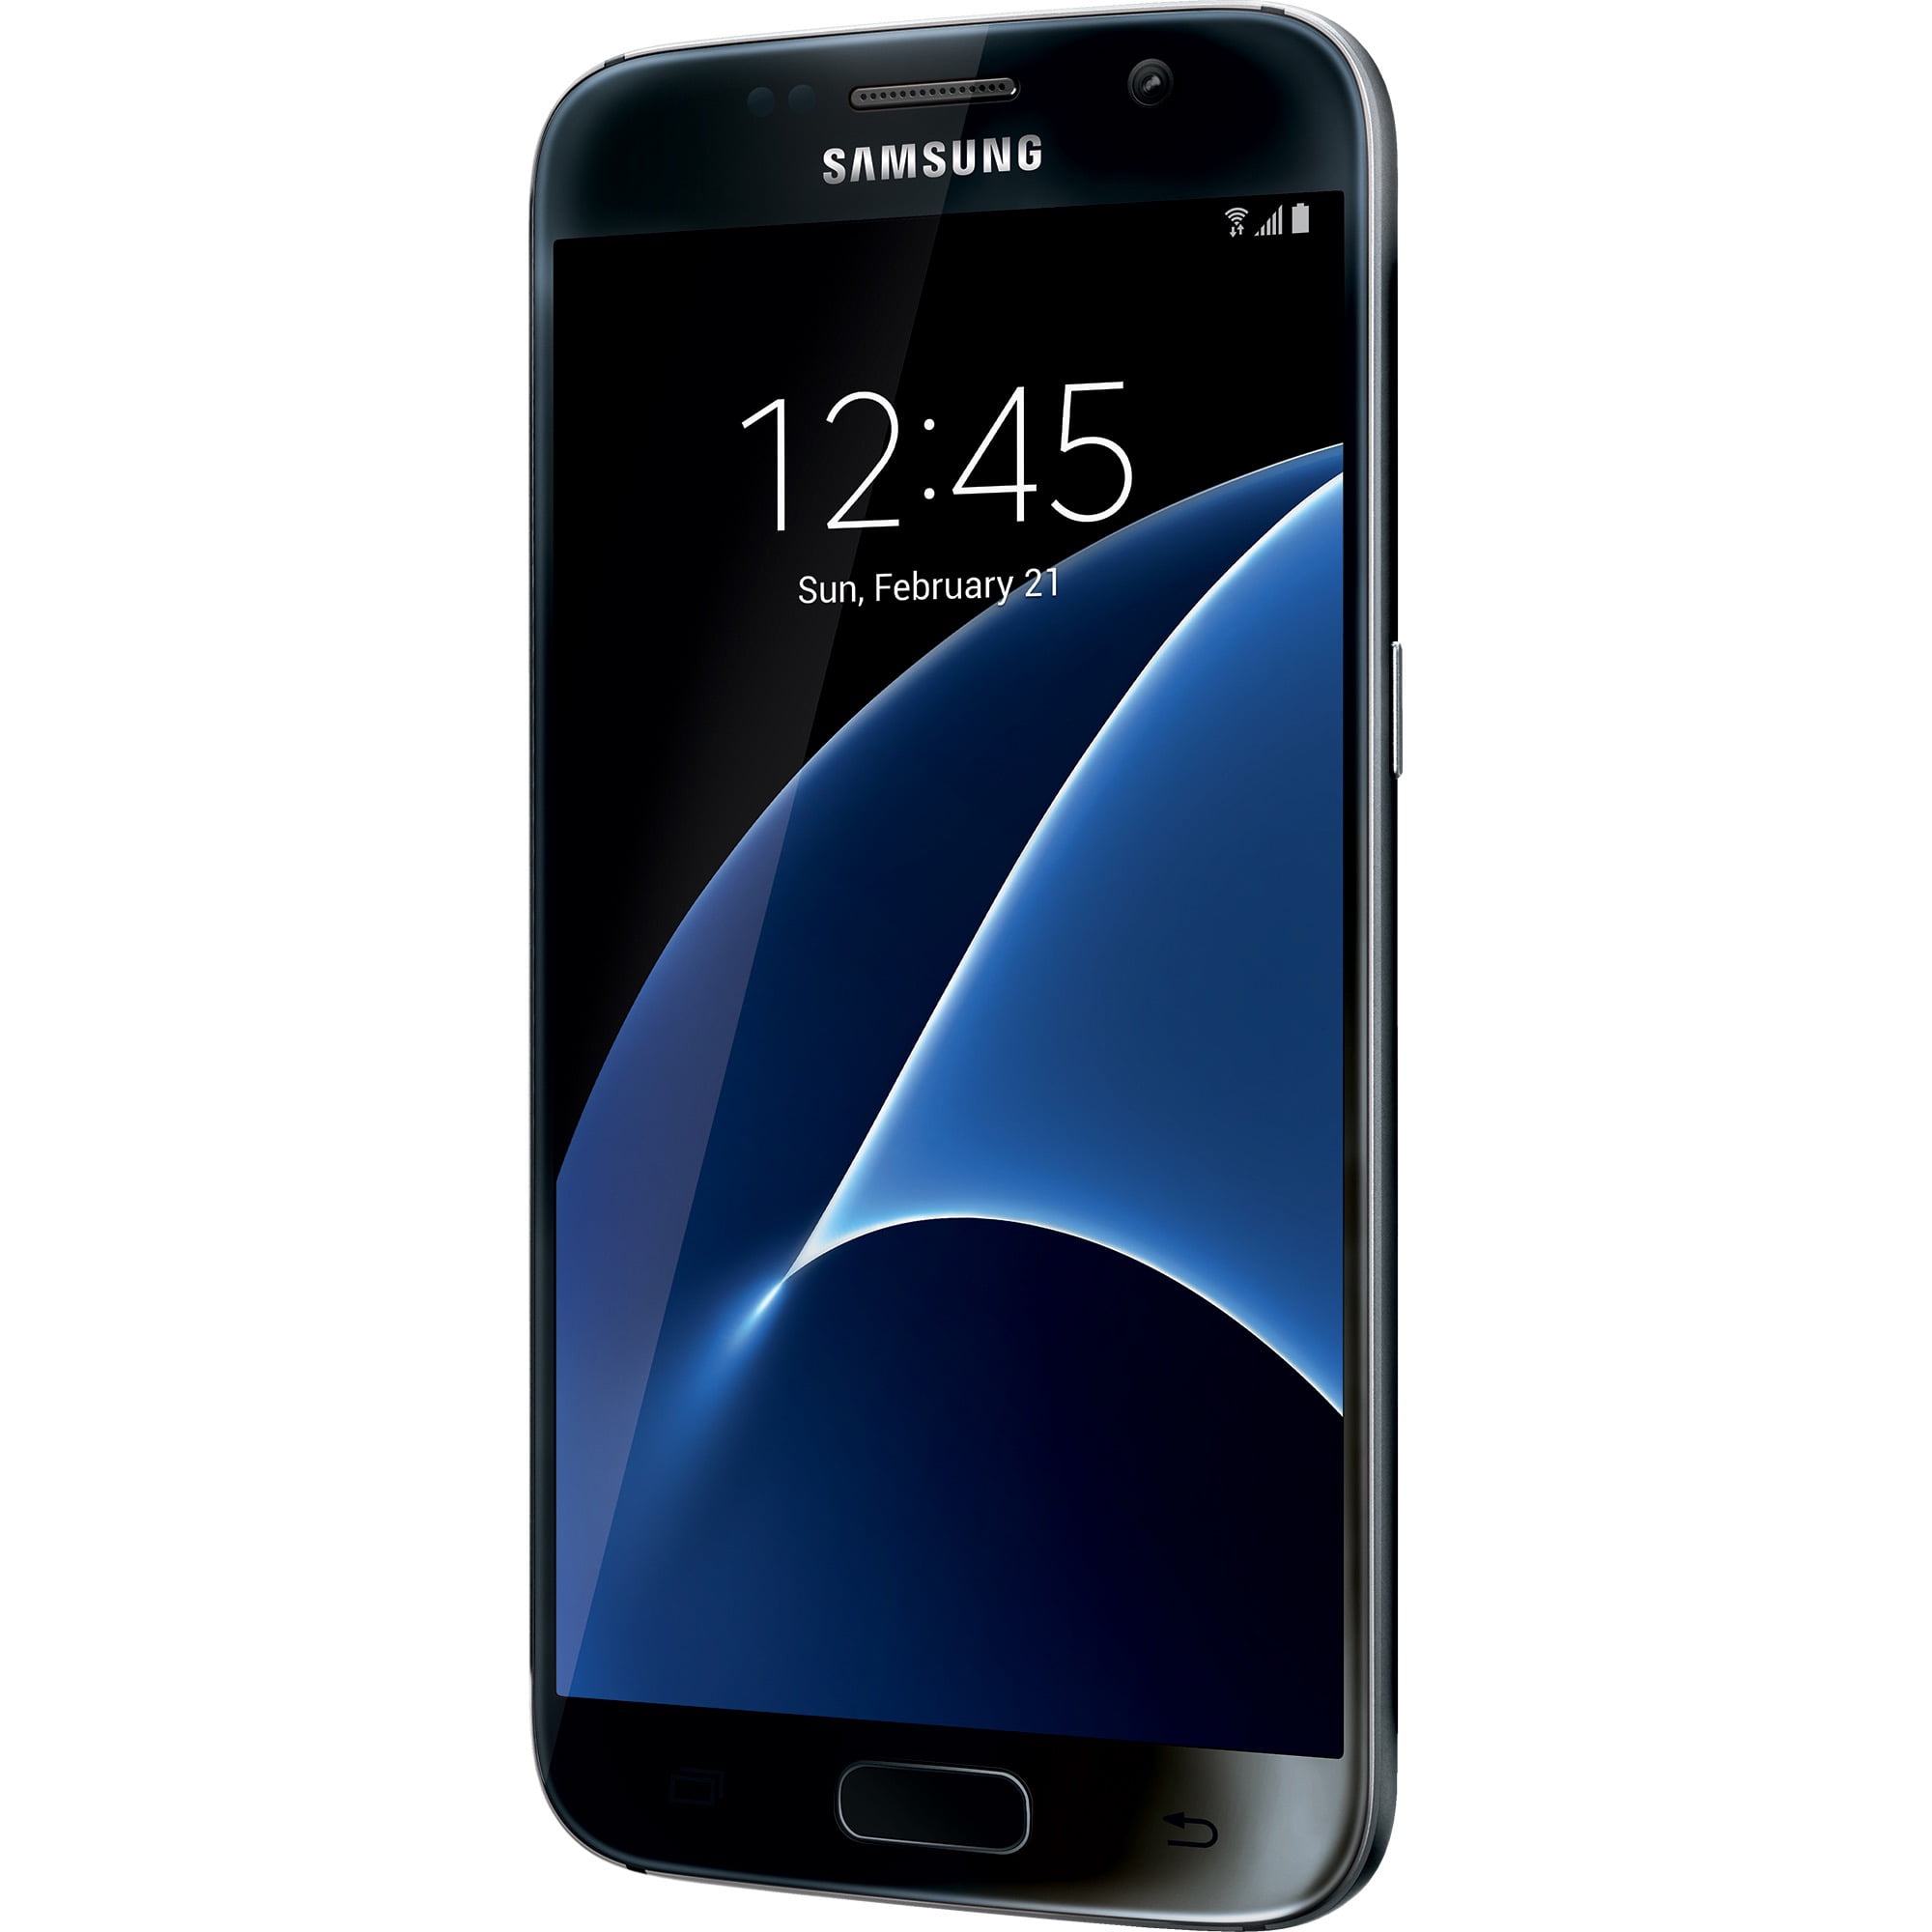 Voorspellen Materialisme Cerebrum Restored Straight Talk SAMSUNG Galaxy S7 4G LTE, 32GB Black Prepaid  Smartphone (Refurbished) - Walmart.com